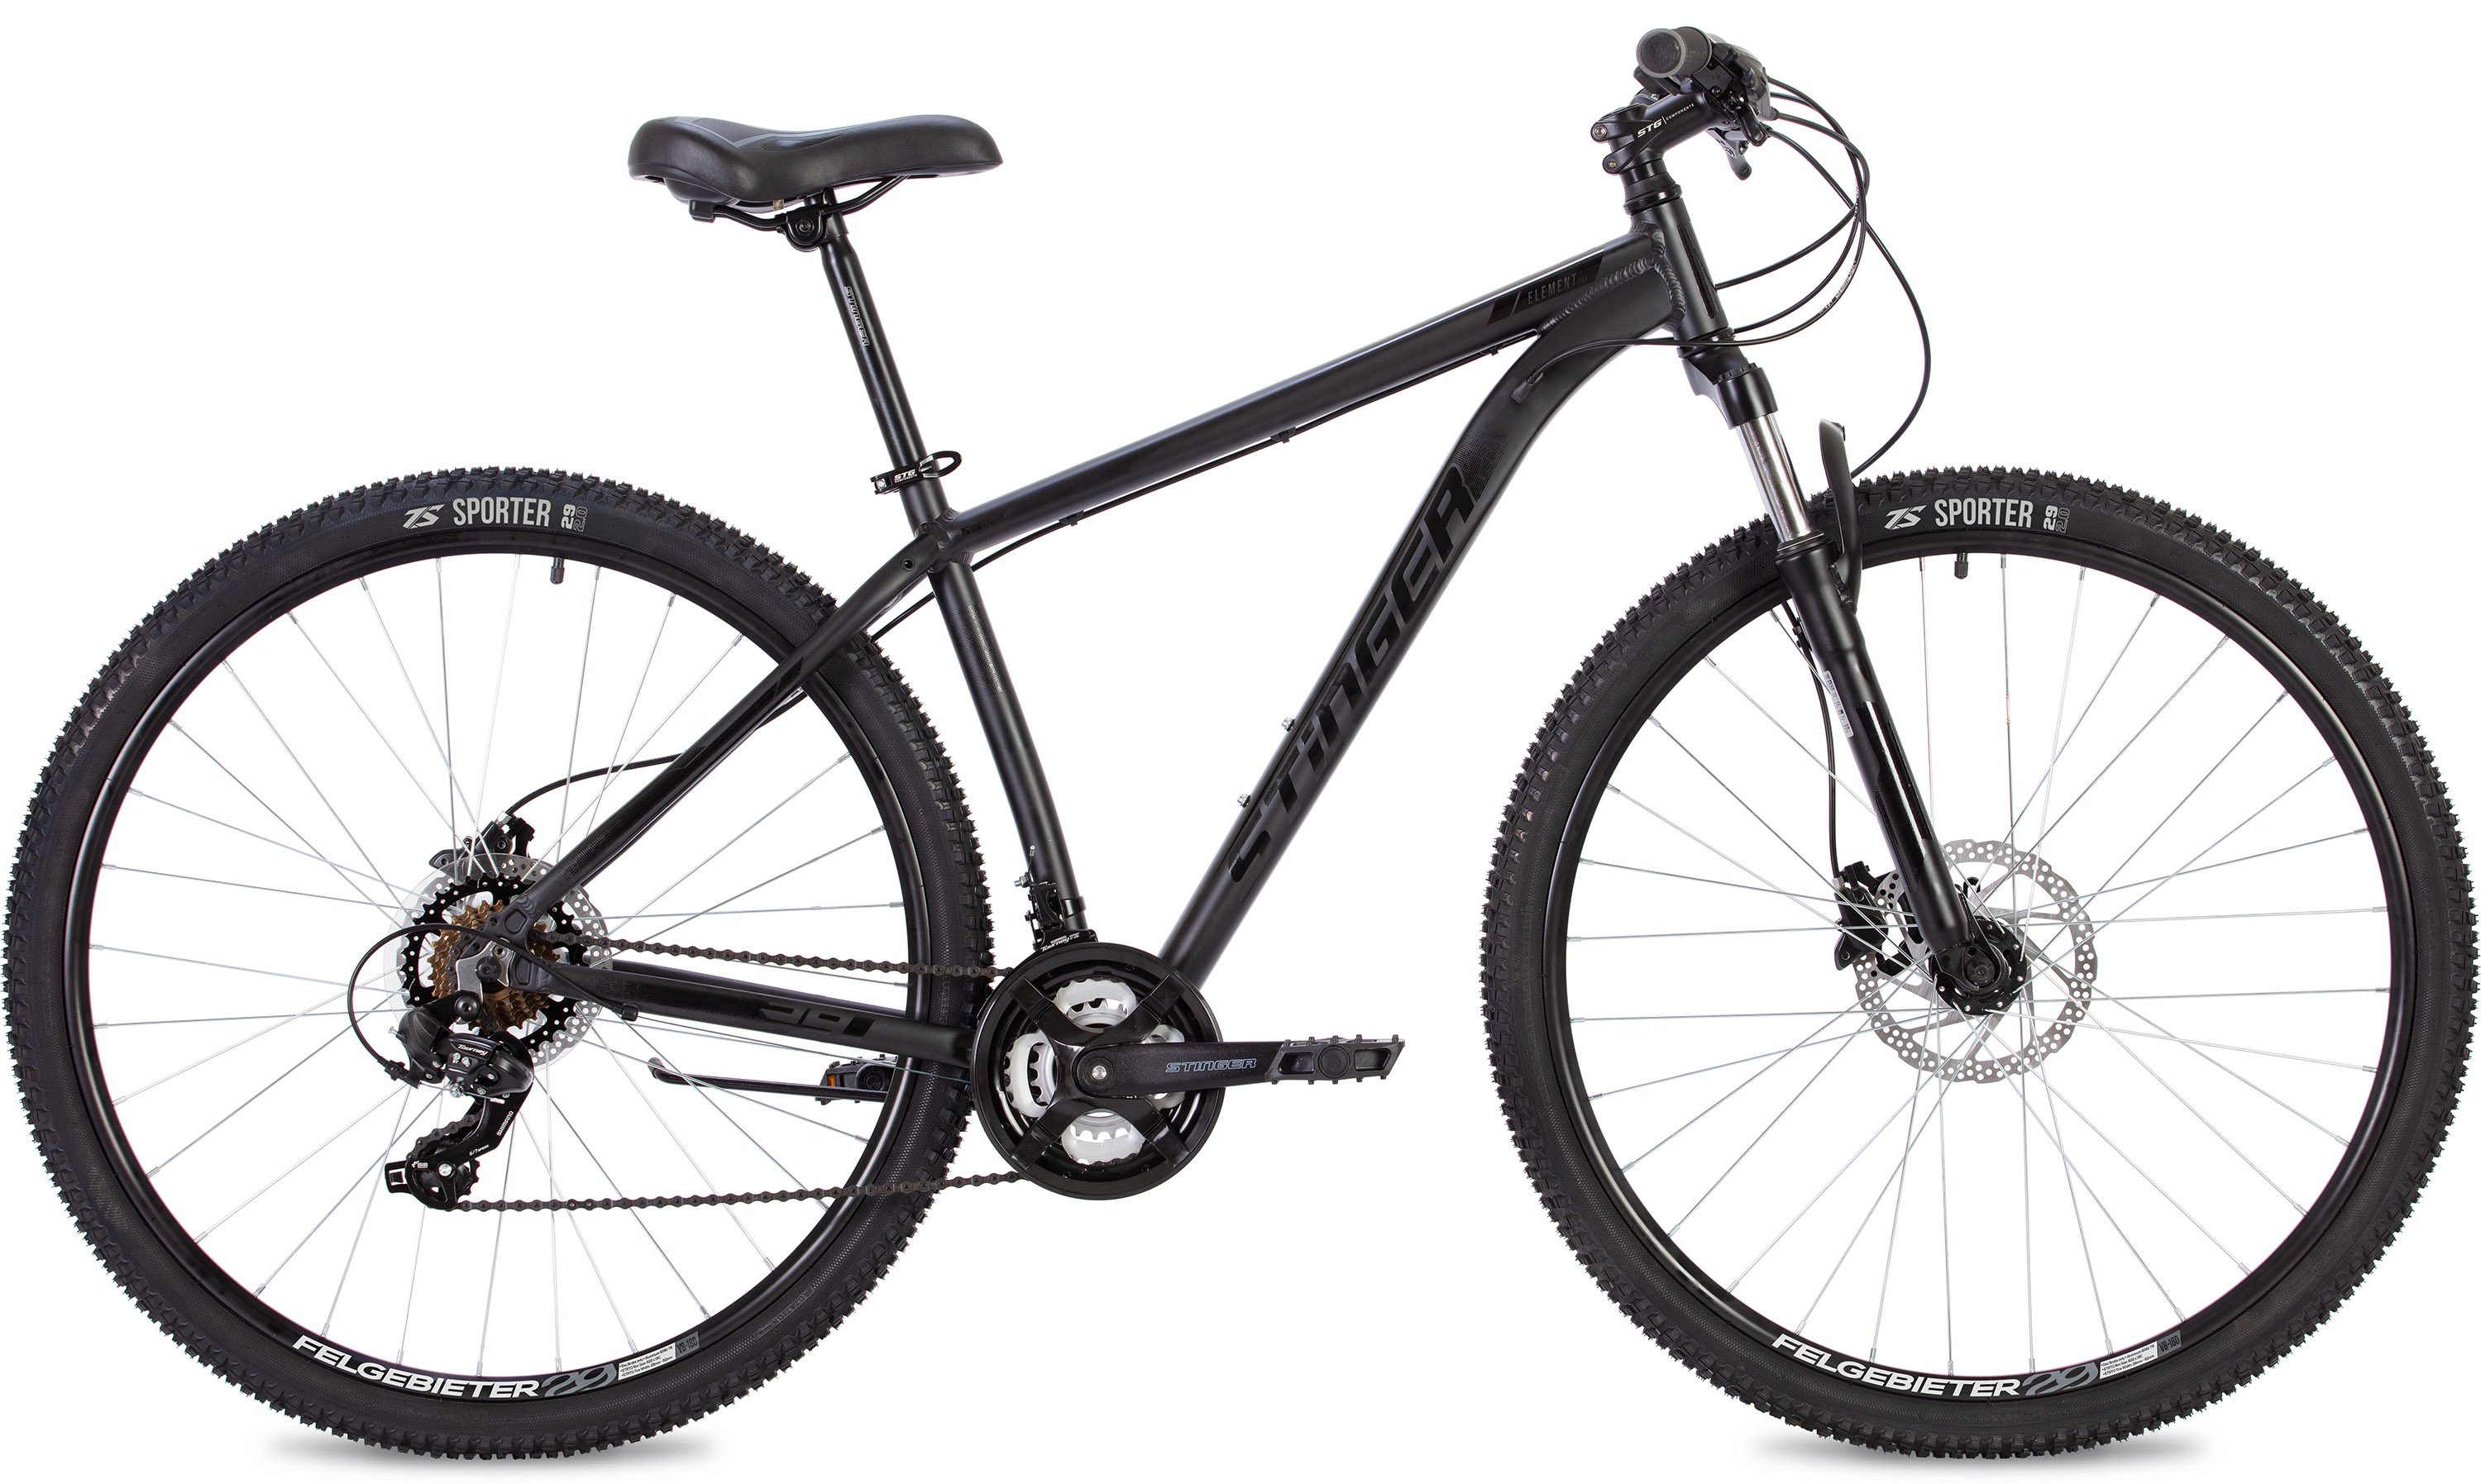  Отзывы о Горном велосипеде Stinger Element Pro 26 2020